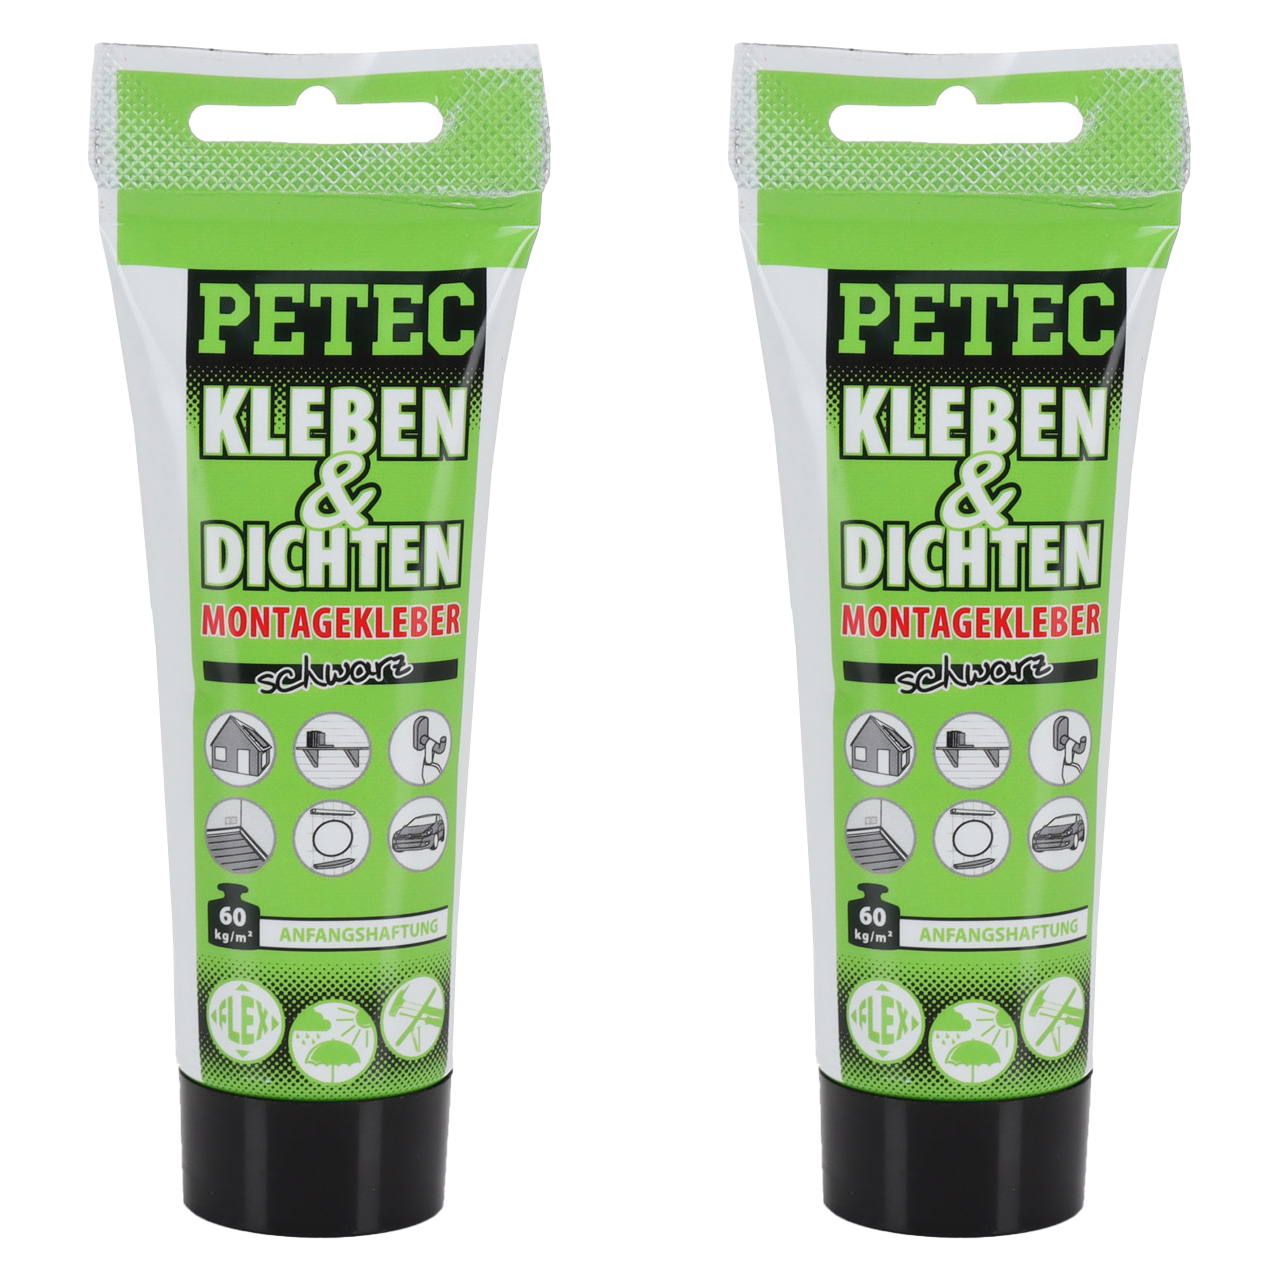 PETEC Klebstoffe / Kleber - 93800 